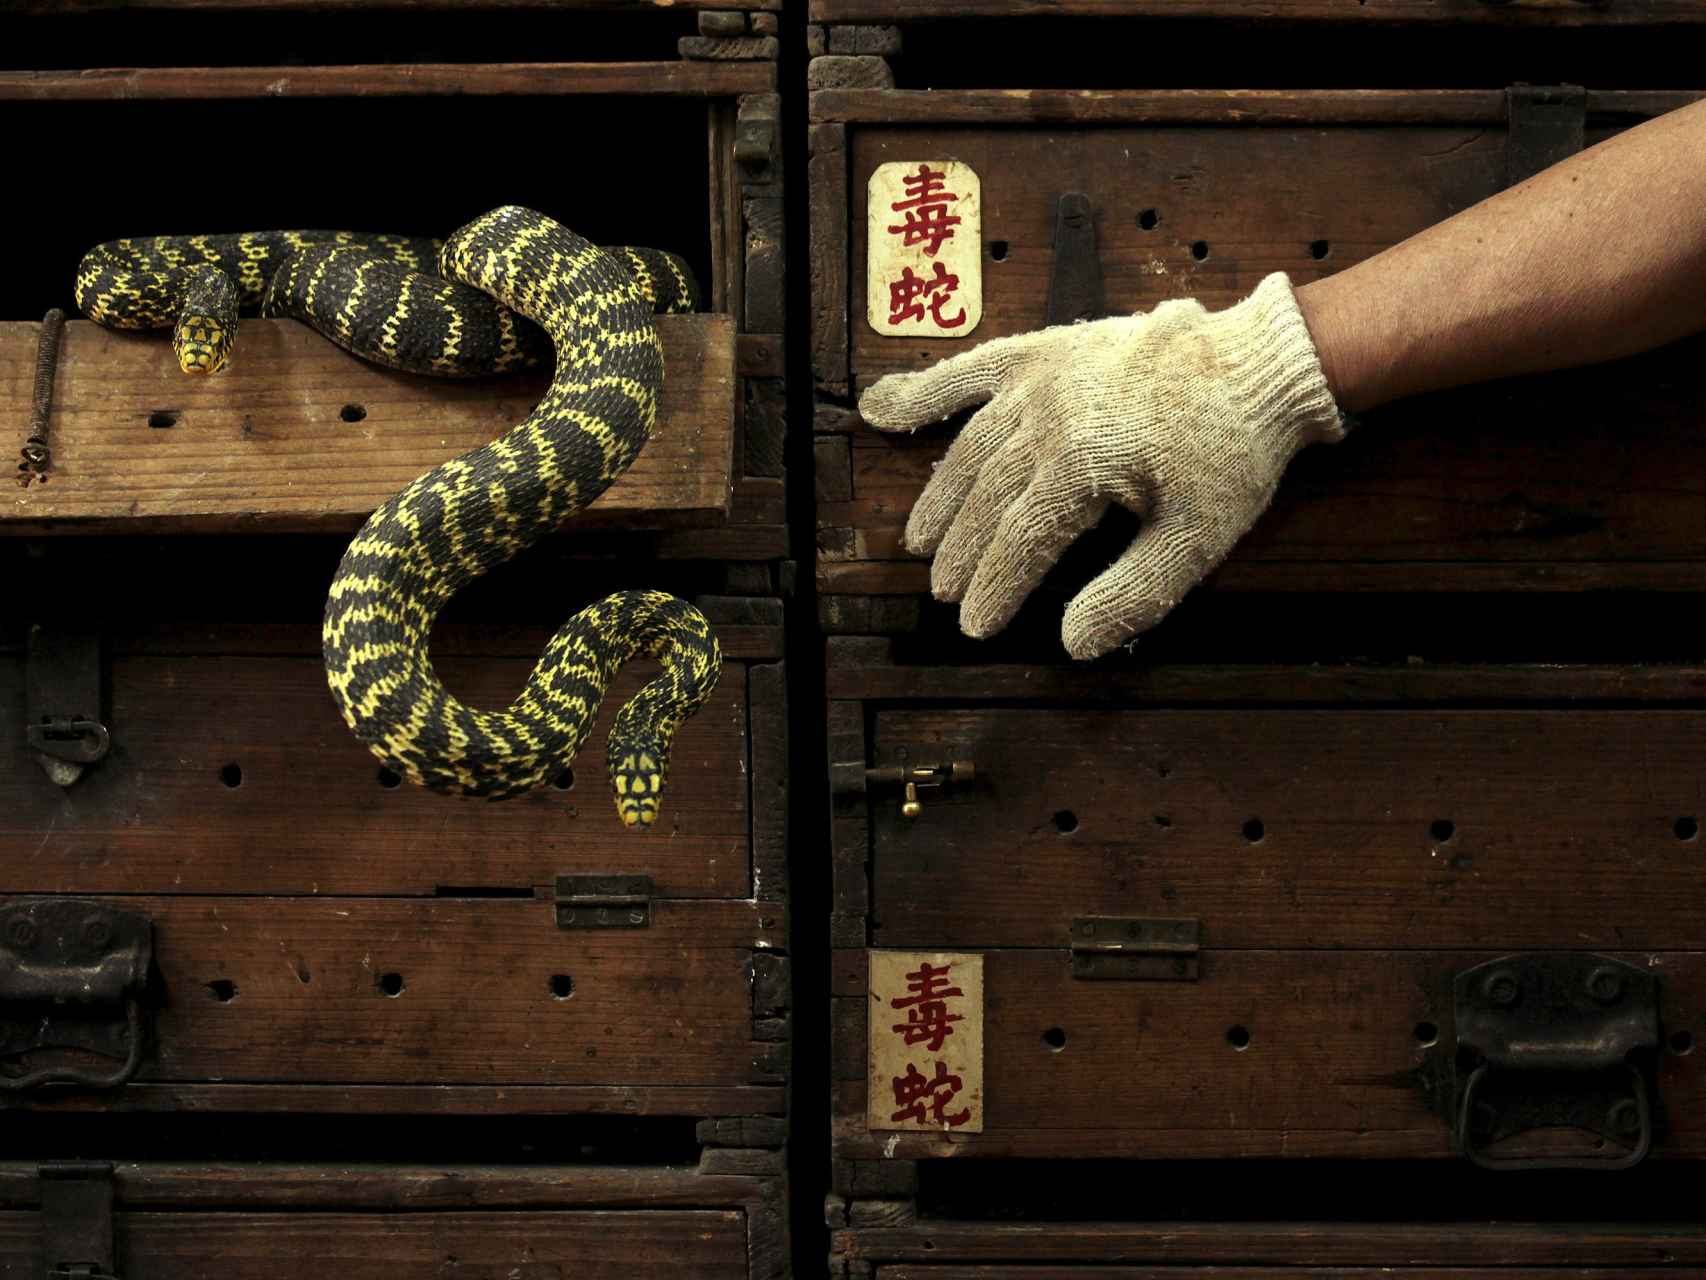 Serpientes venenosas en una tienda de Hong Kong.